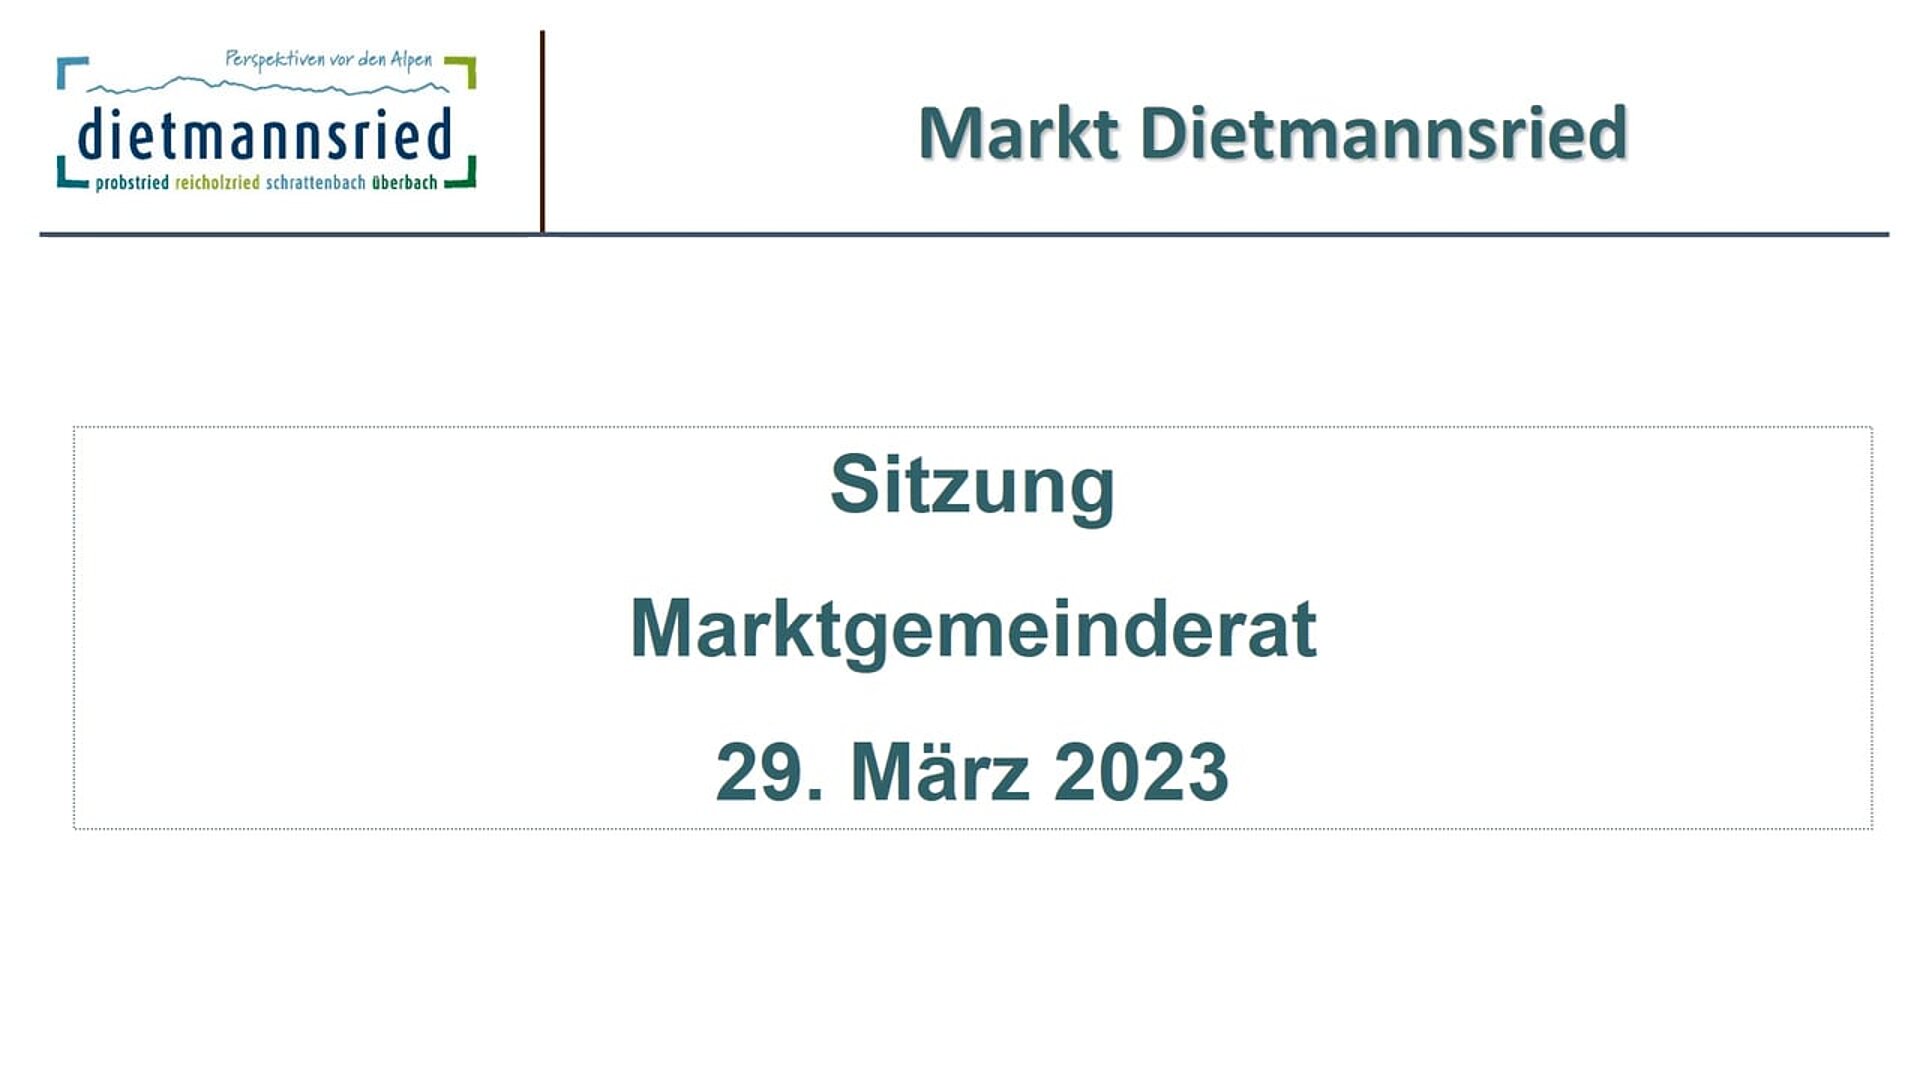 Sitzung Marktgemeinderat vom 29.03.2023